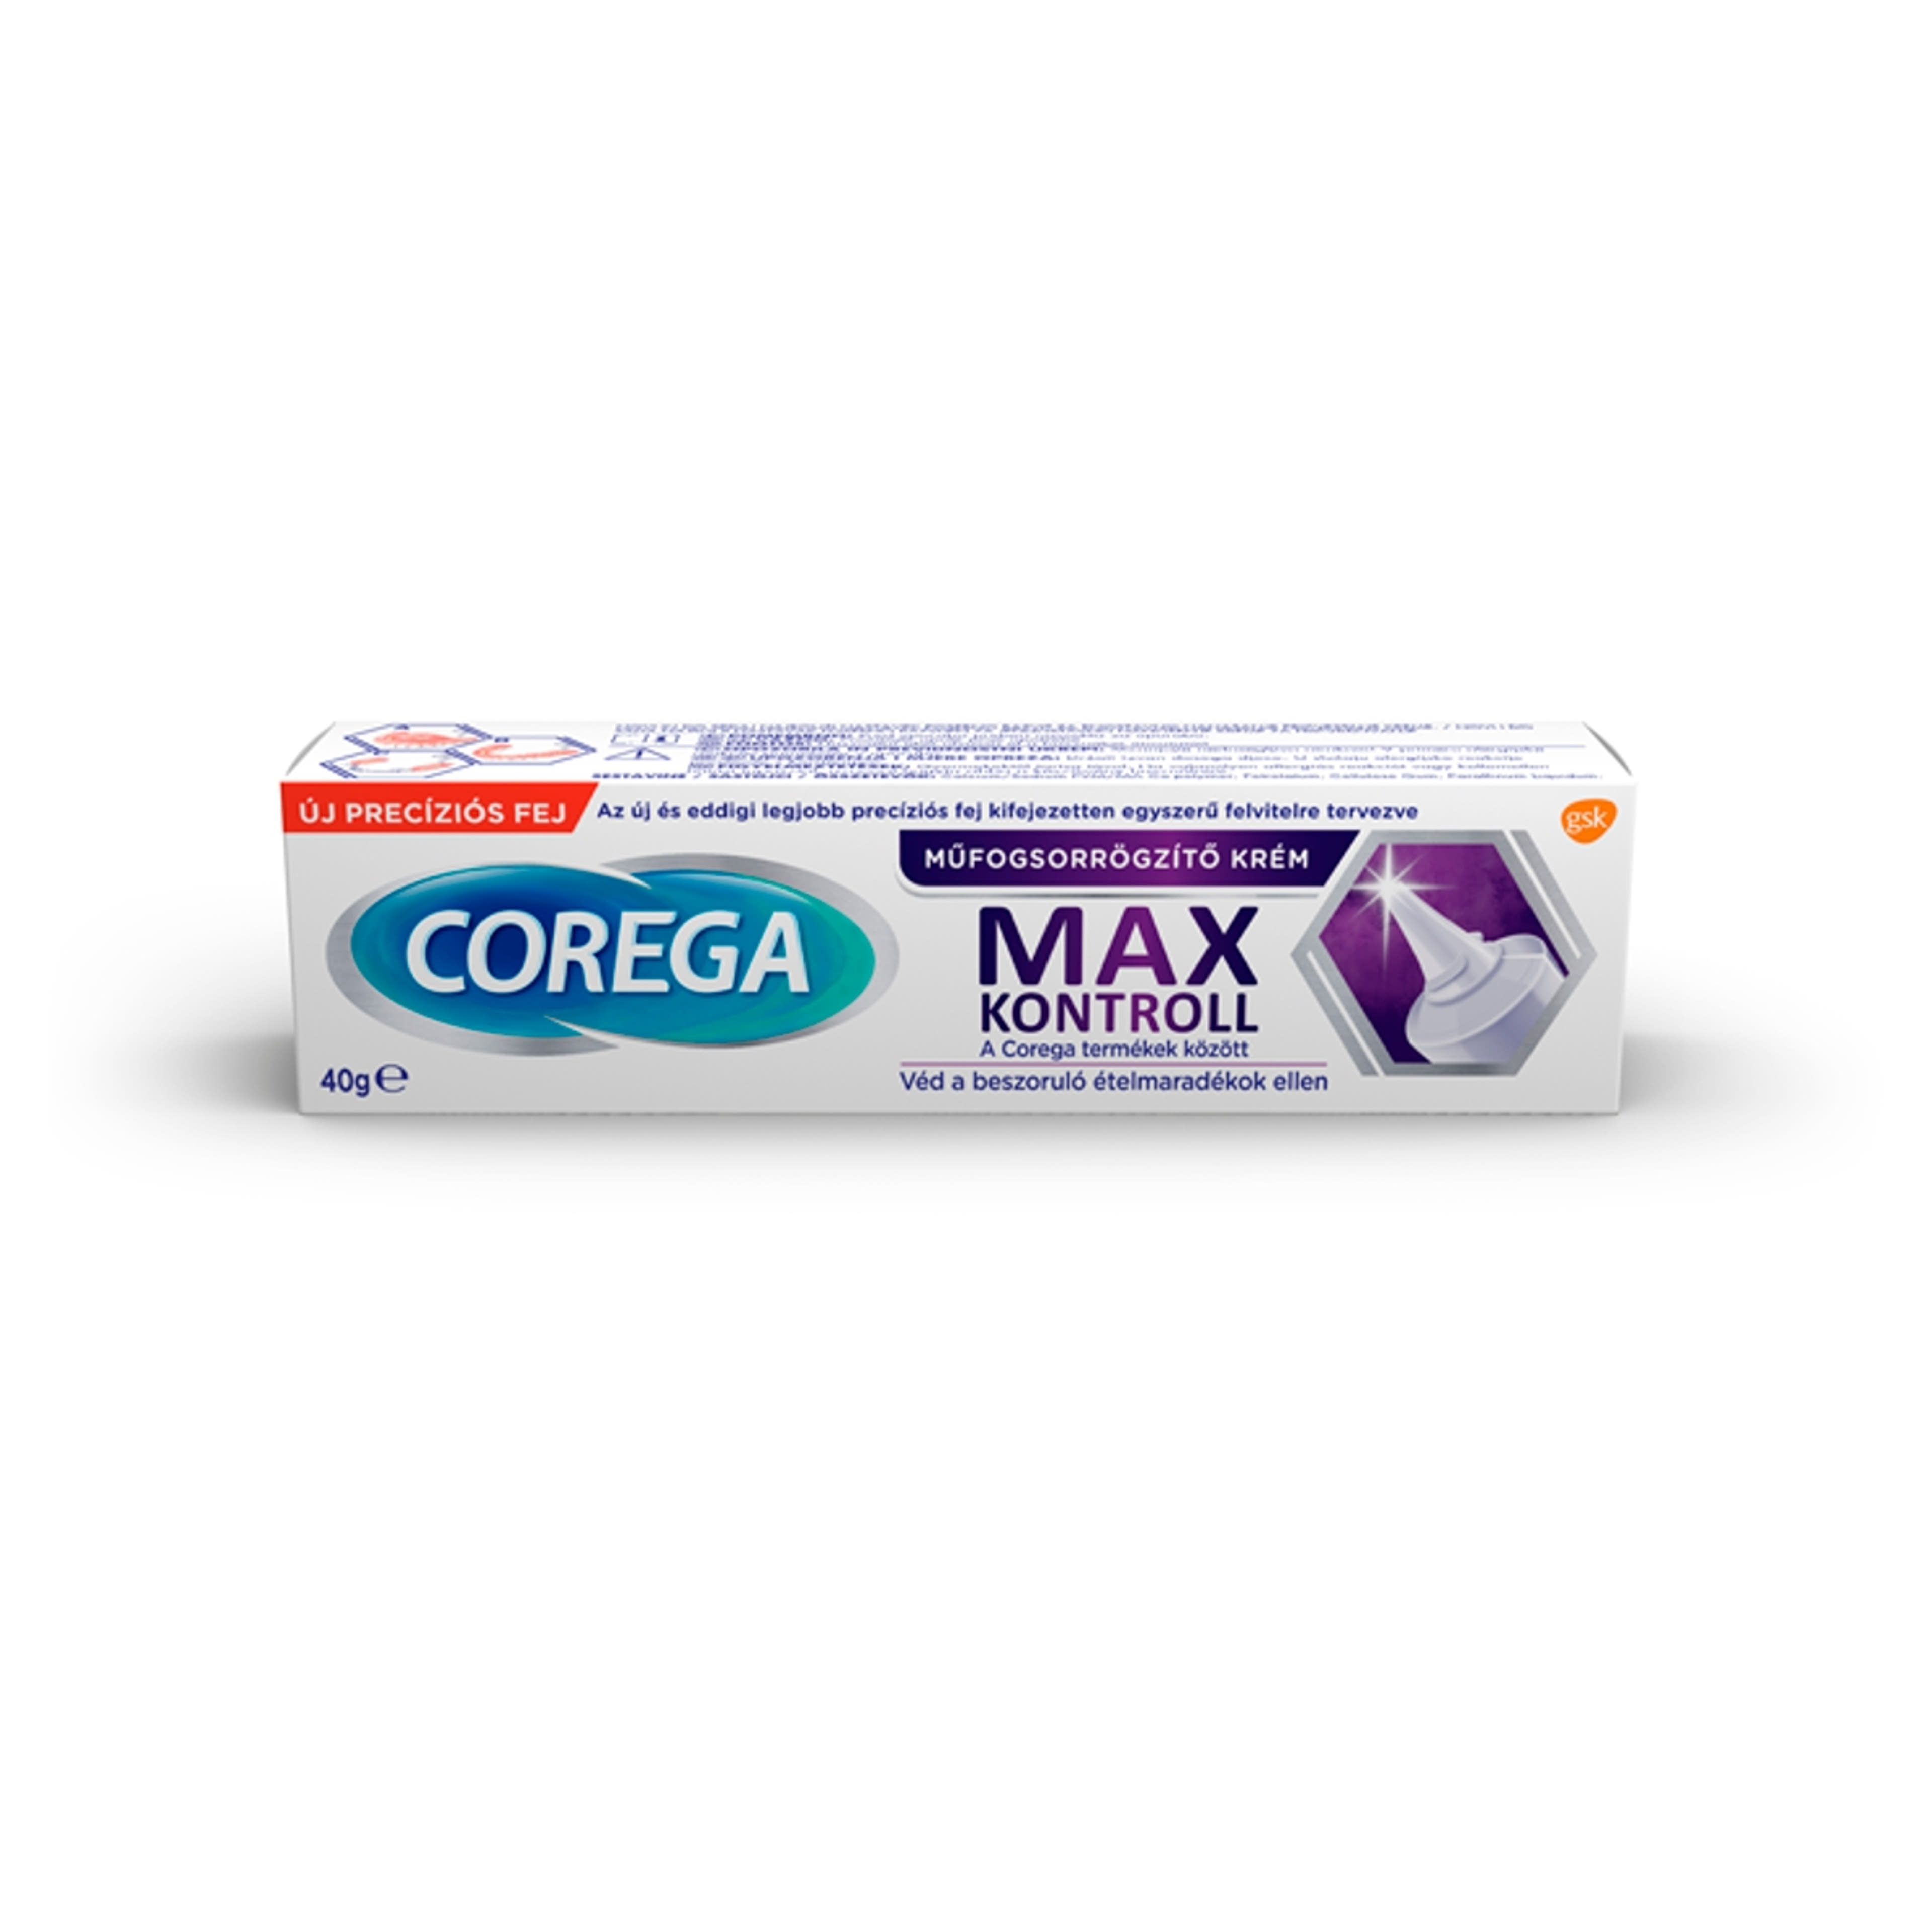 Corega Max Kontroll műfogsorrögzítő krém - 40 g-1